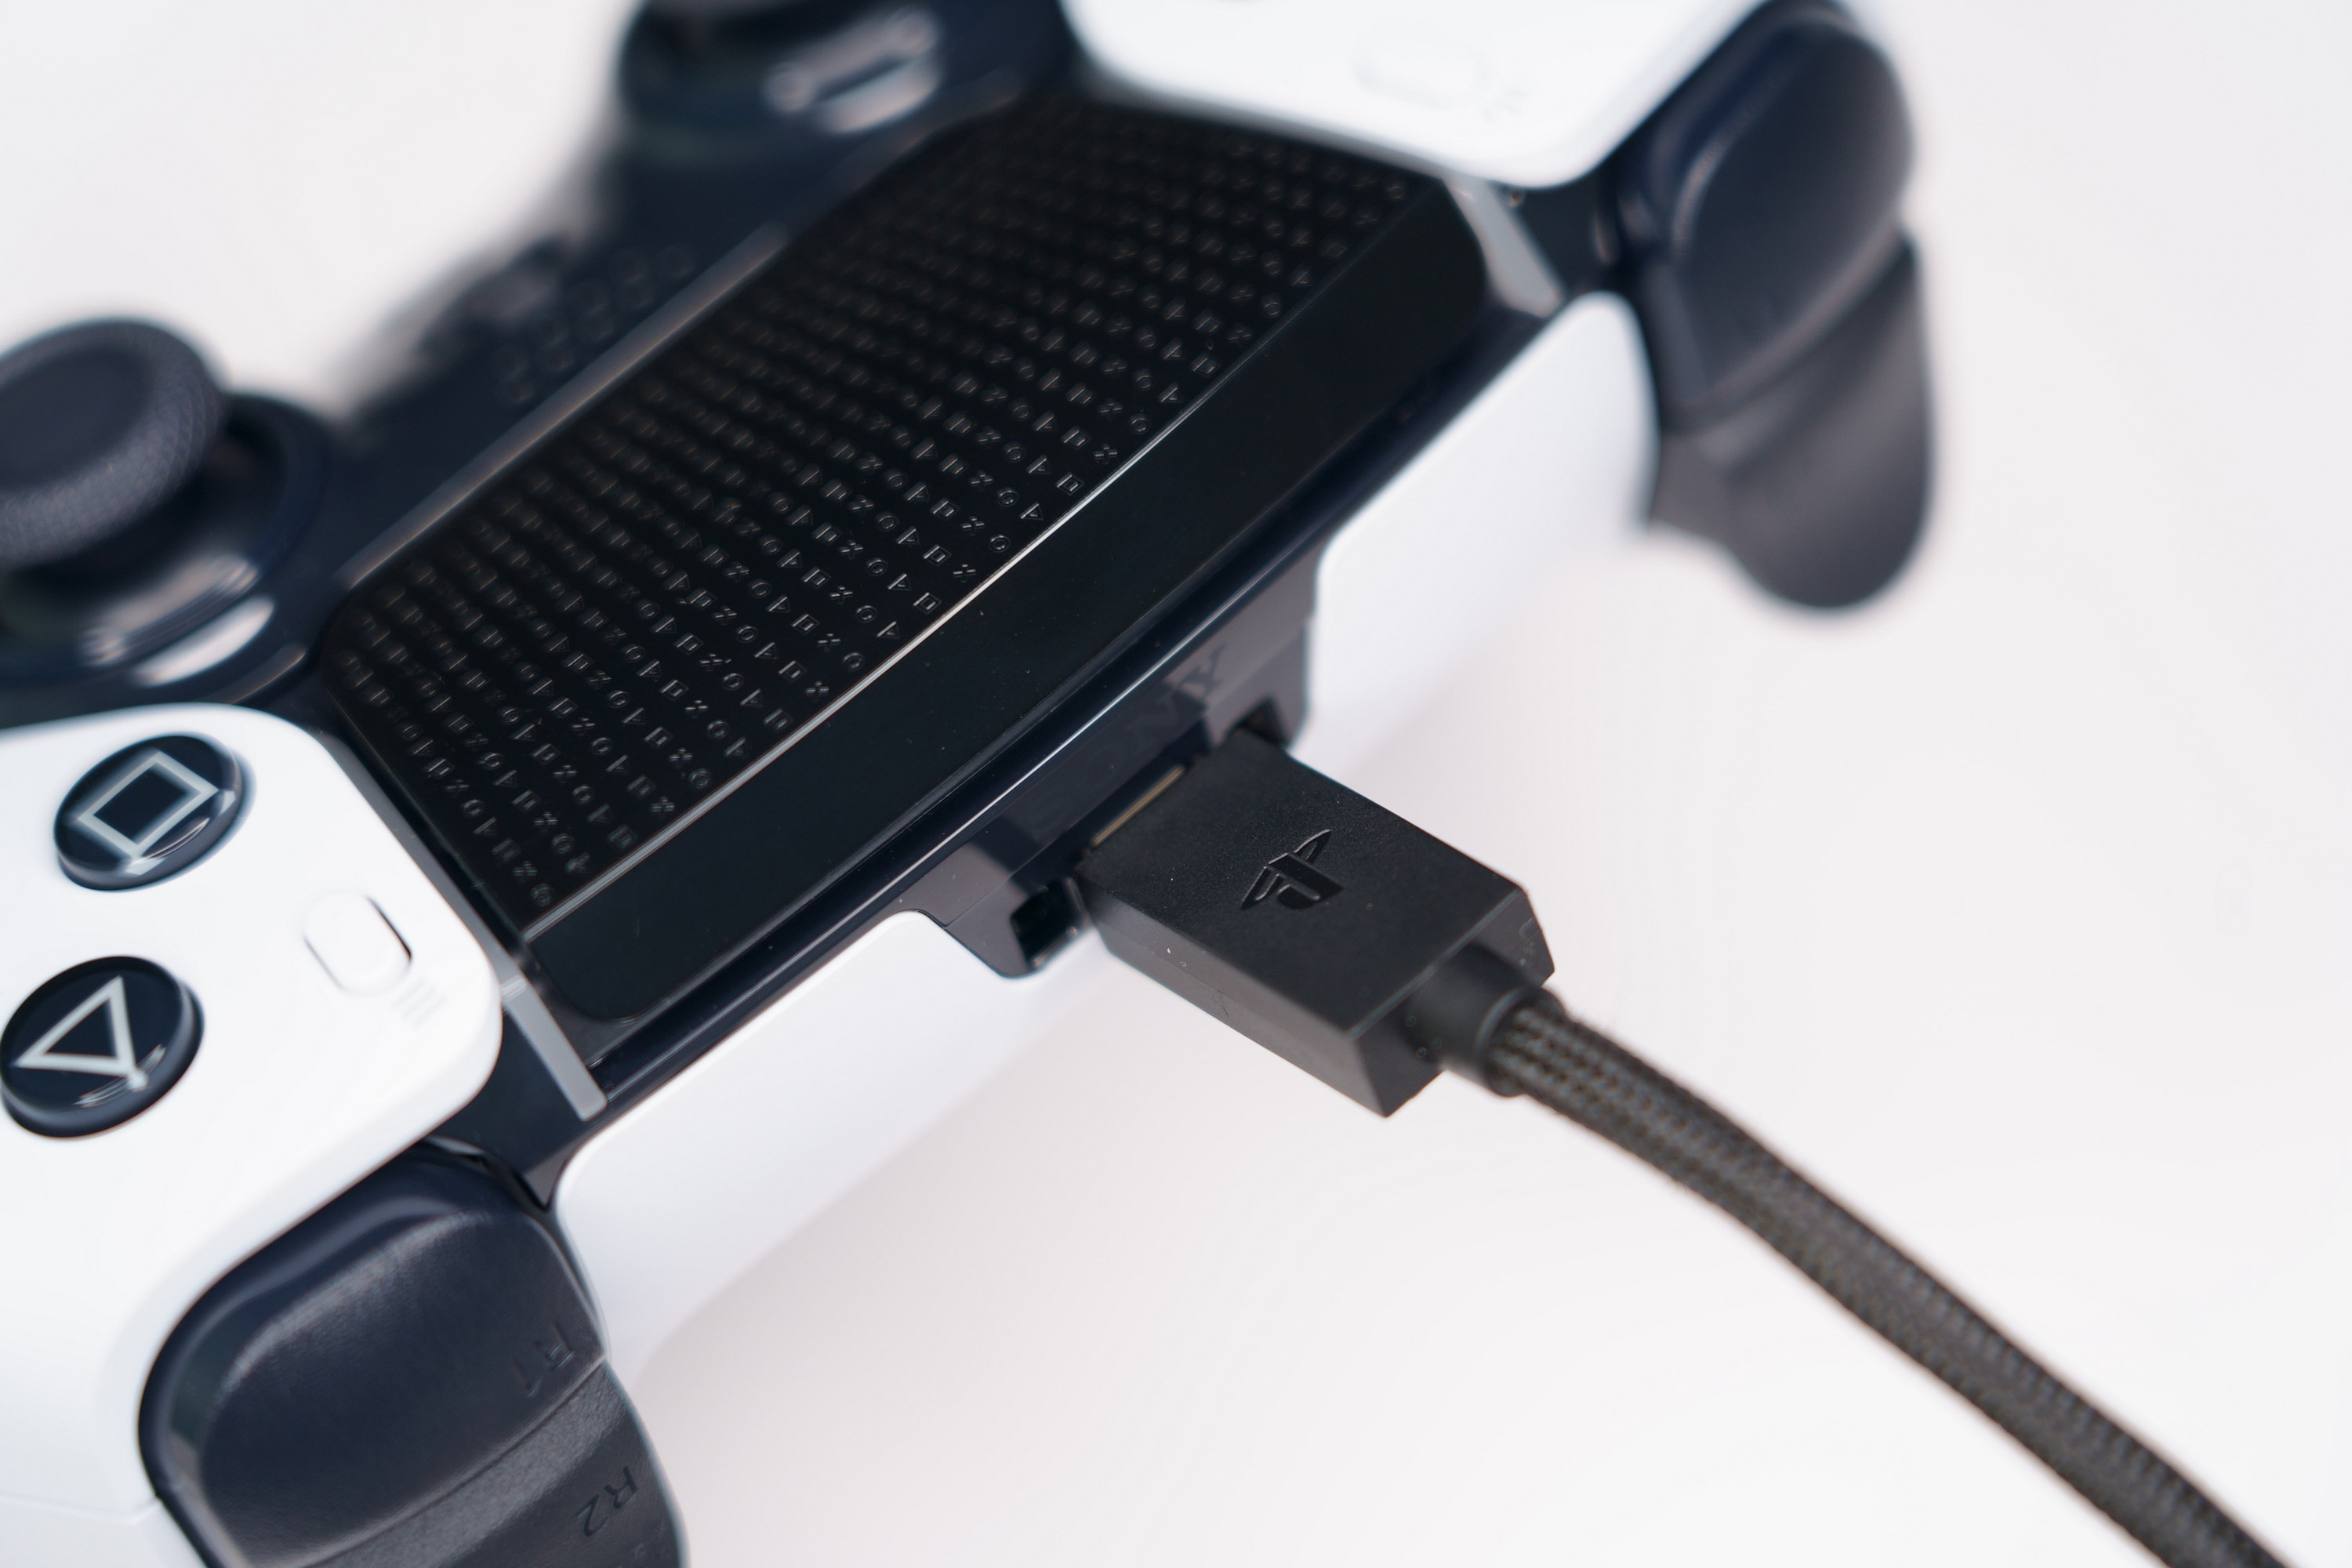 PS5 DualSense Edge 高效能控制器一手开箱 丰富自订功能满足各类型玩家需求插图80